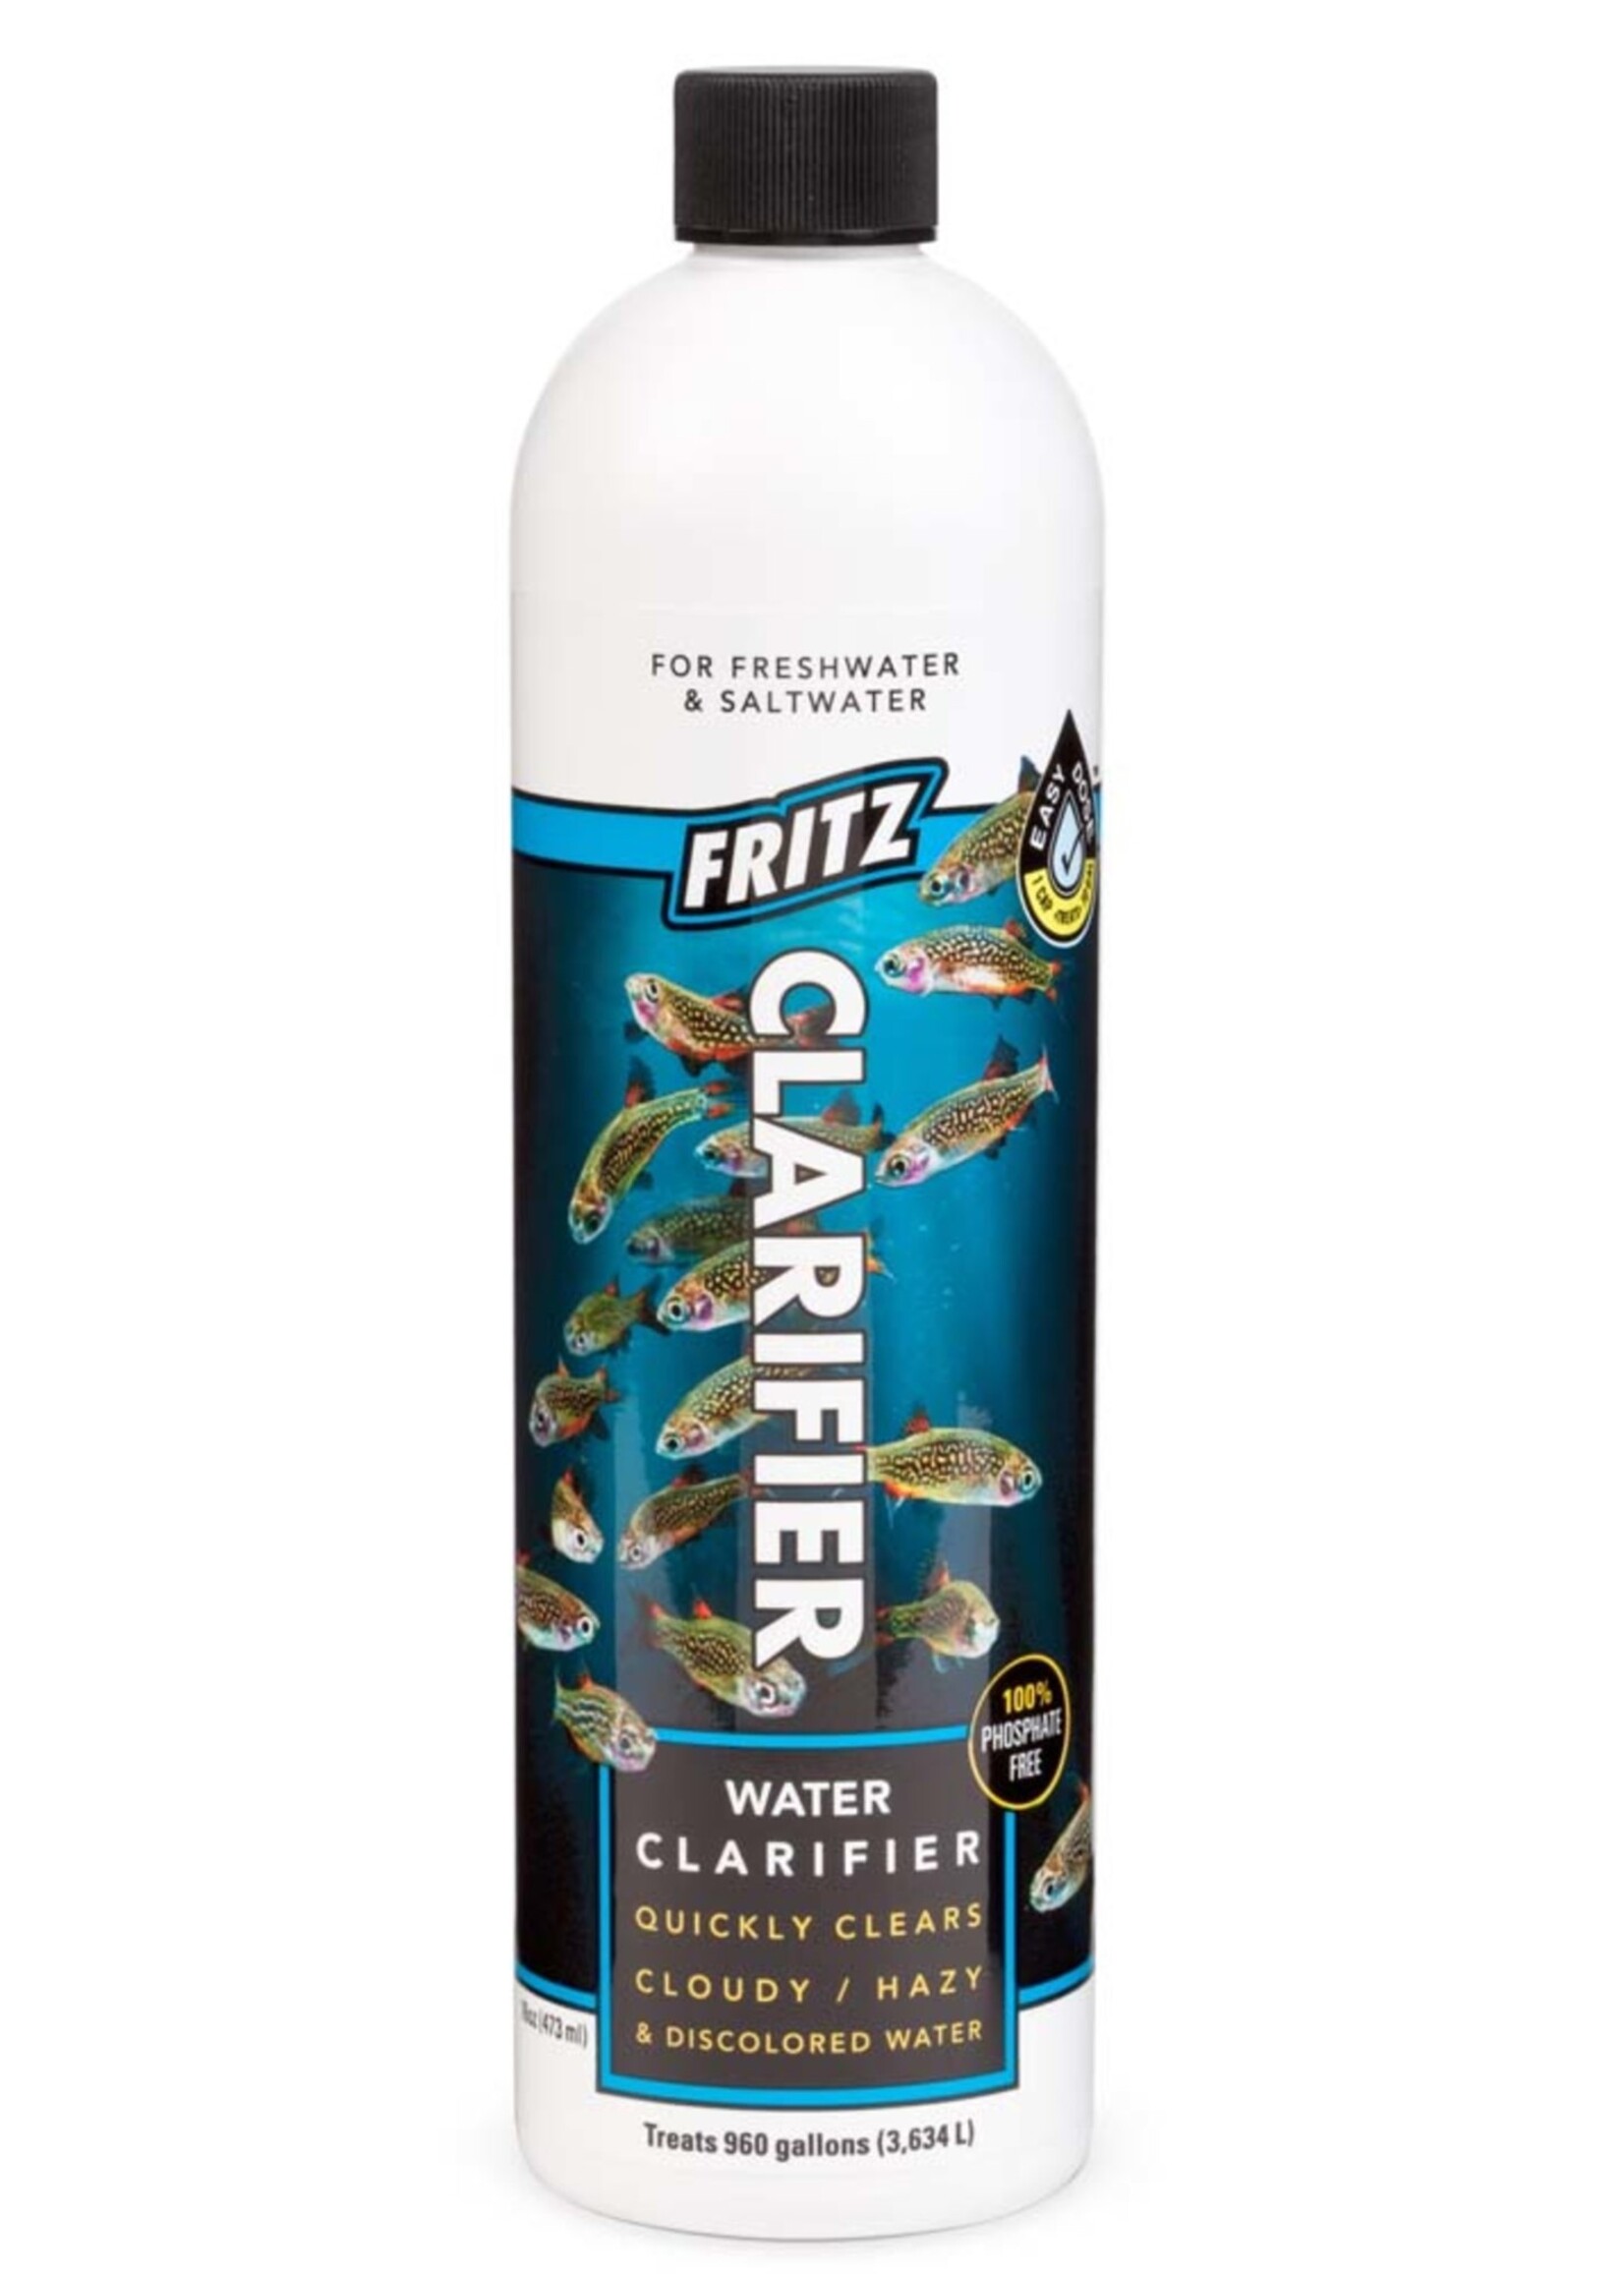 Fritz Aquatics WATER CLARIFIER 16 OZ